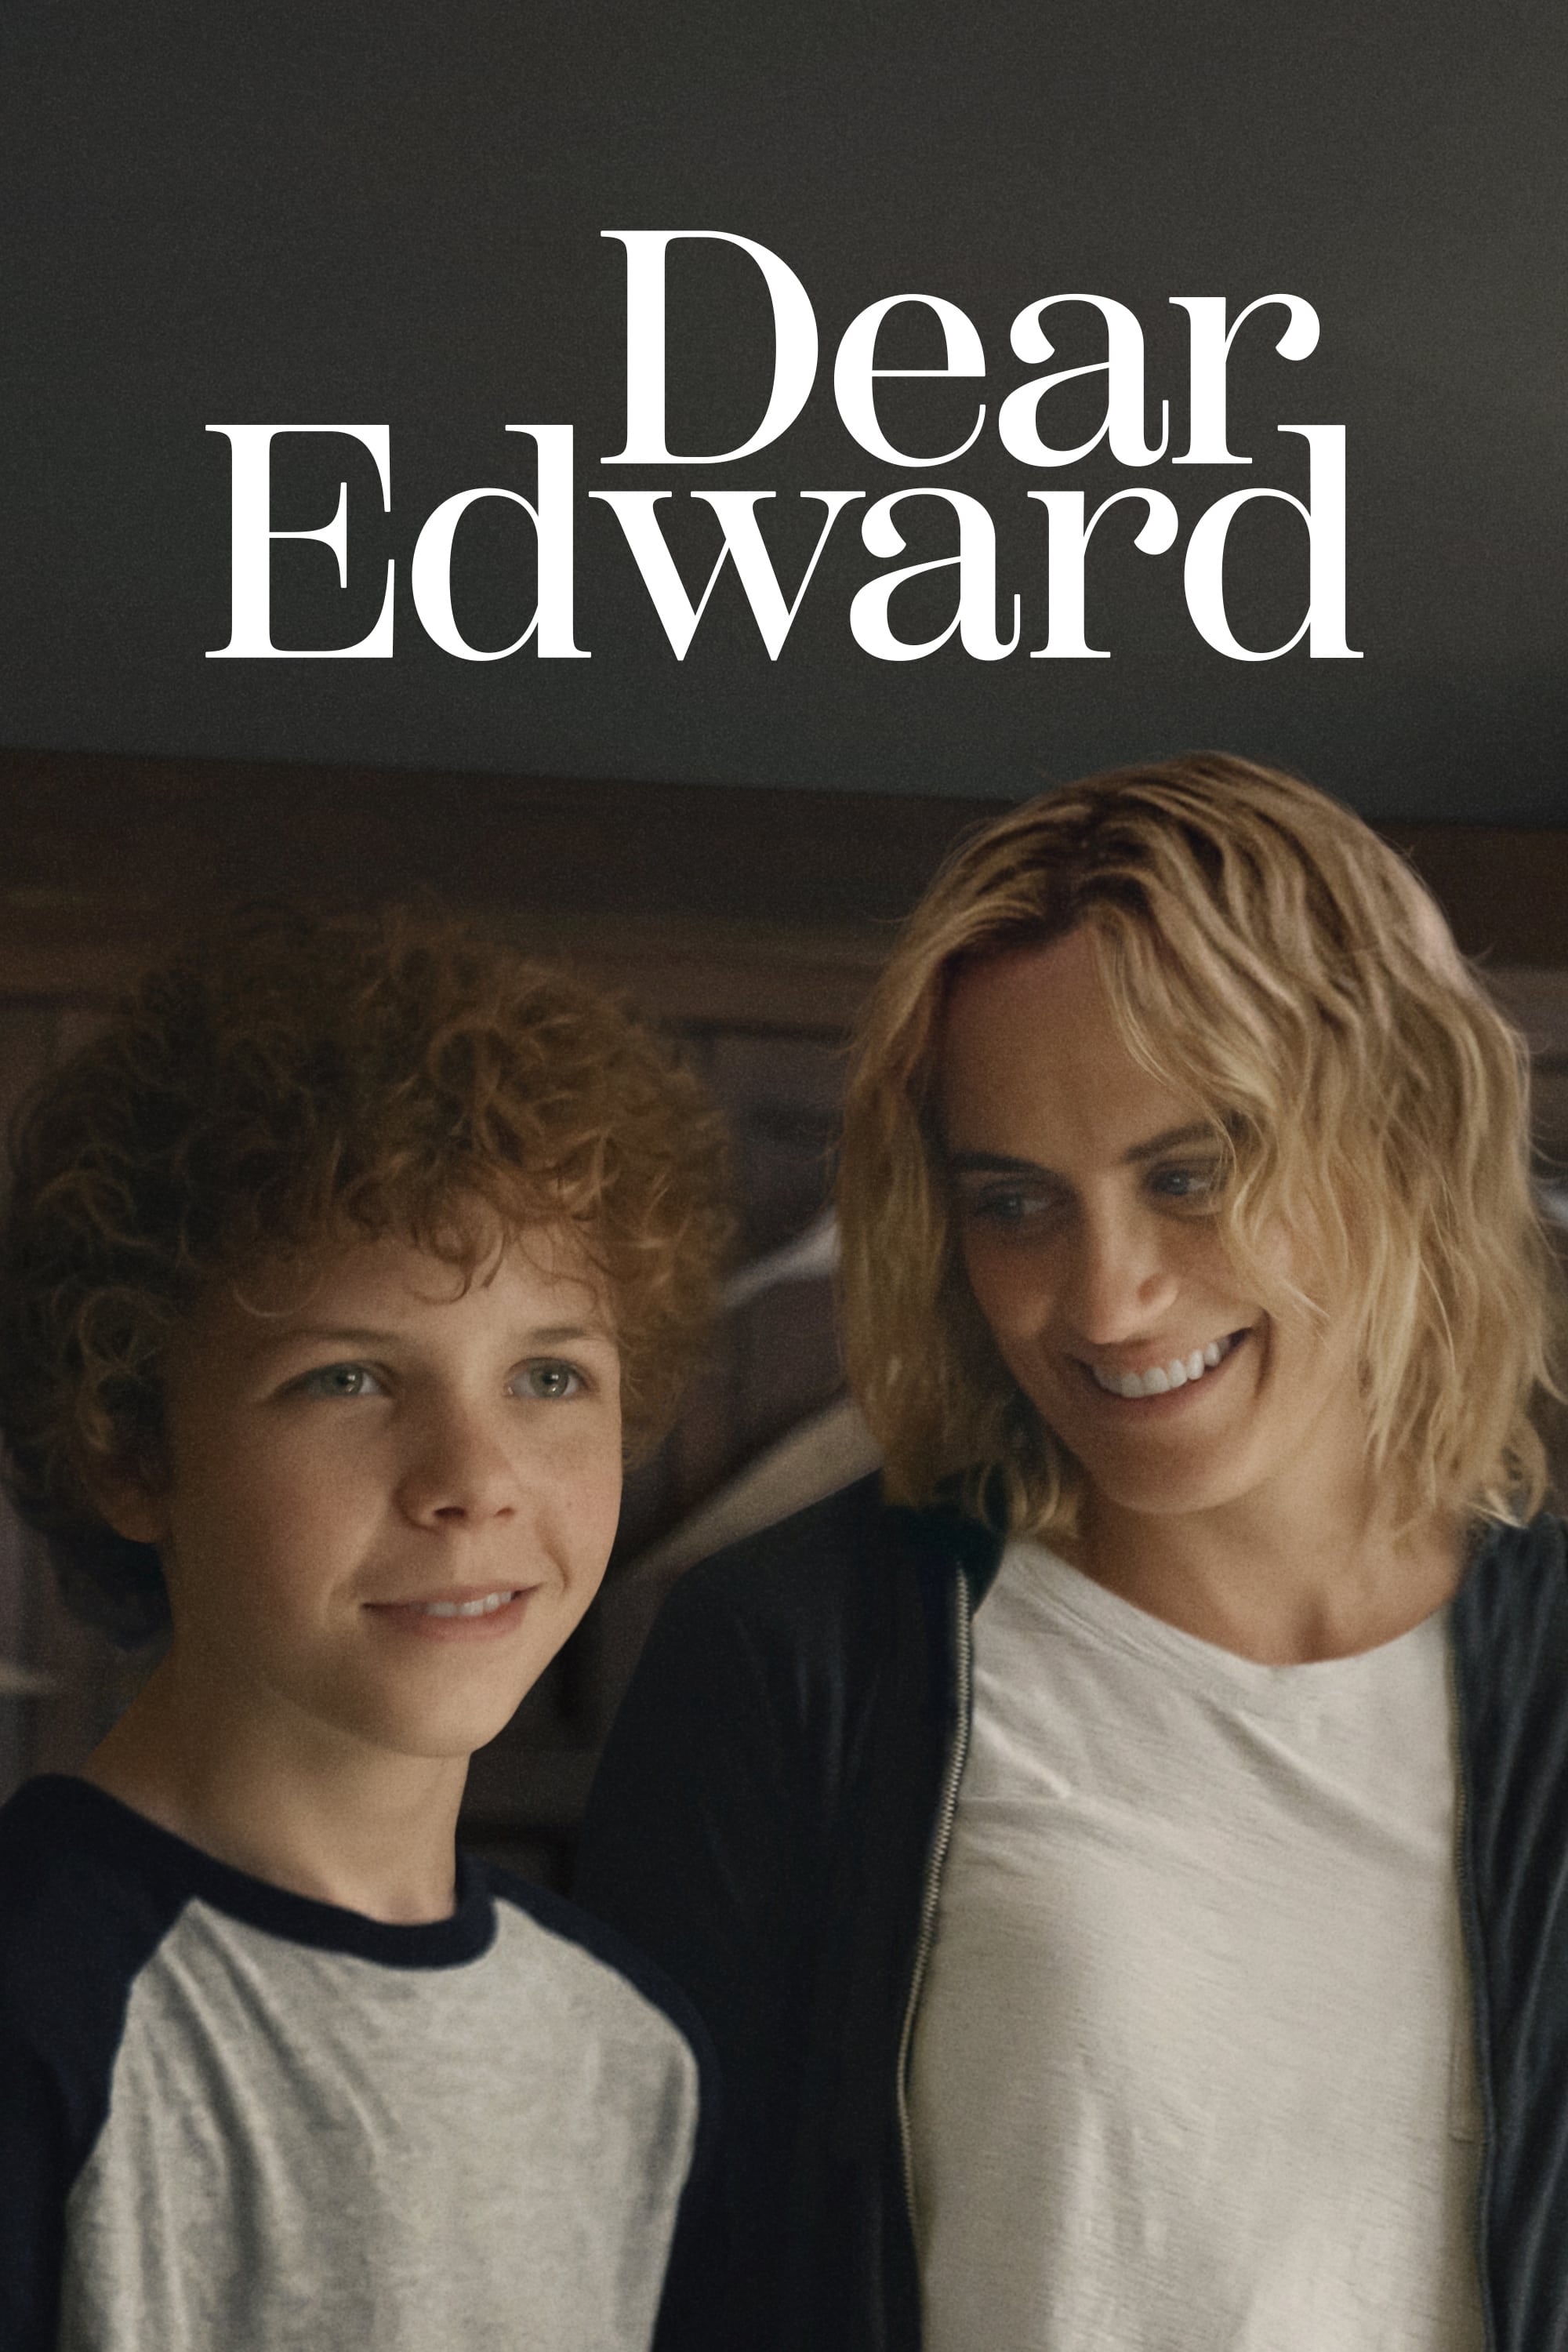 TV ratings for Dear Edward in Australia. Apple TV+ TV series